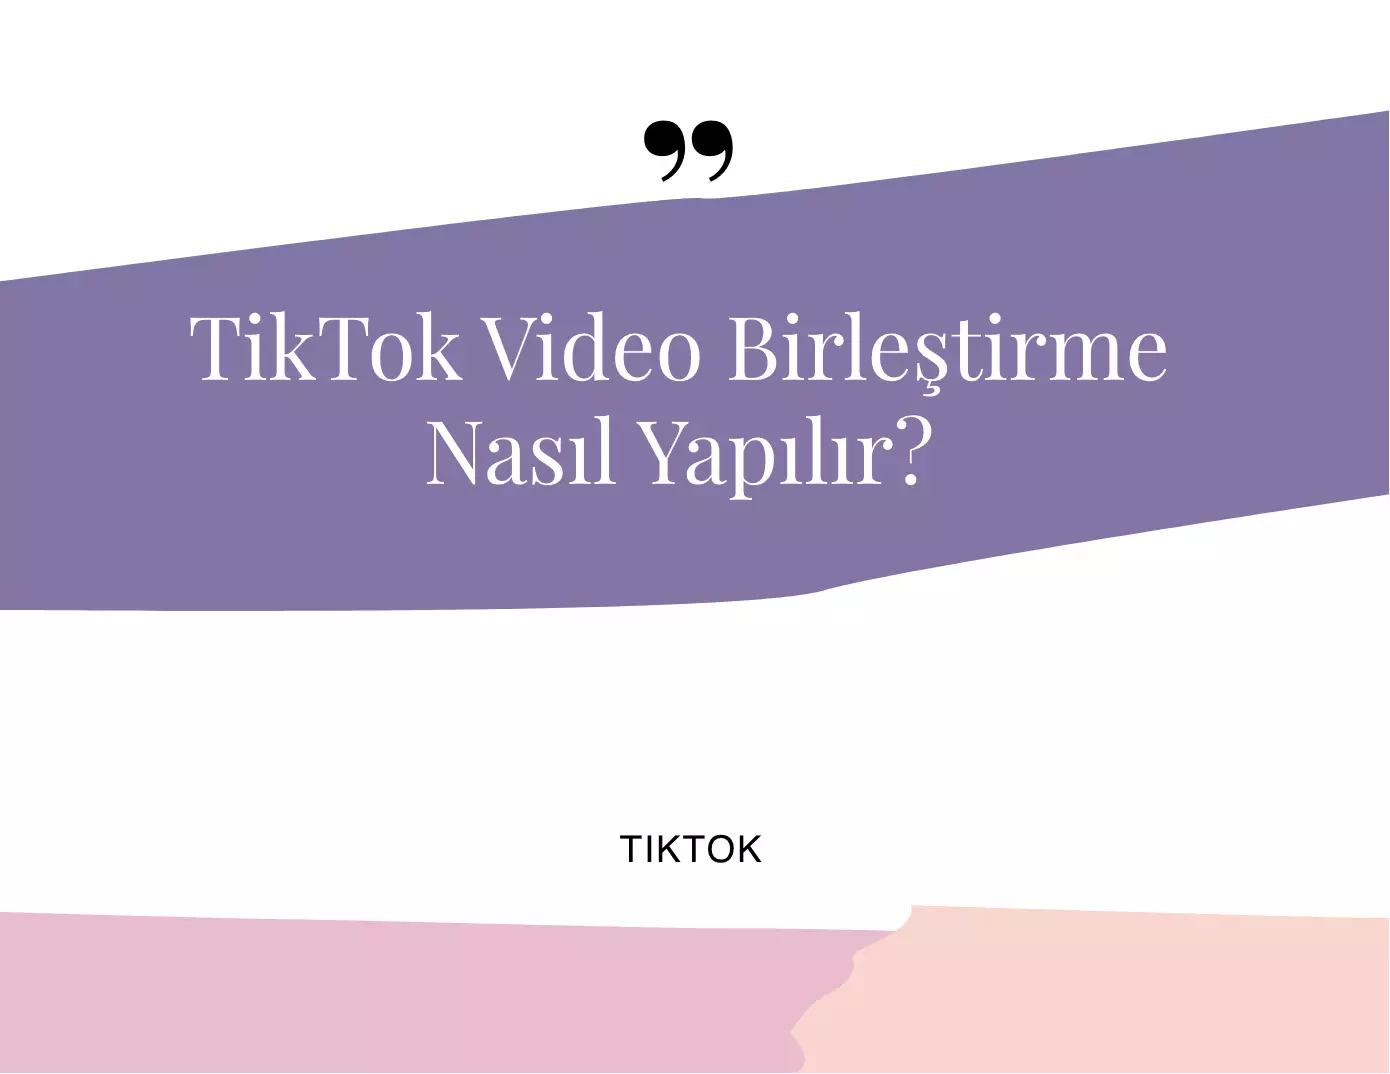 TikTok Video Birleştirme Nasıl Yapılır?